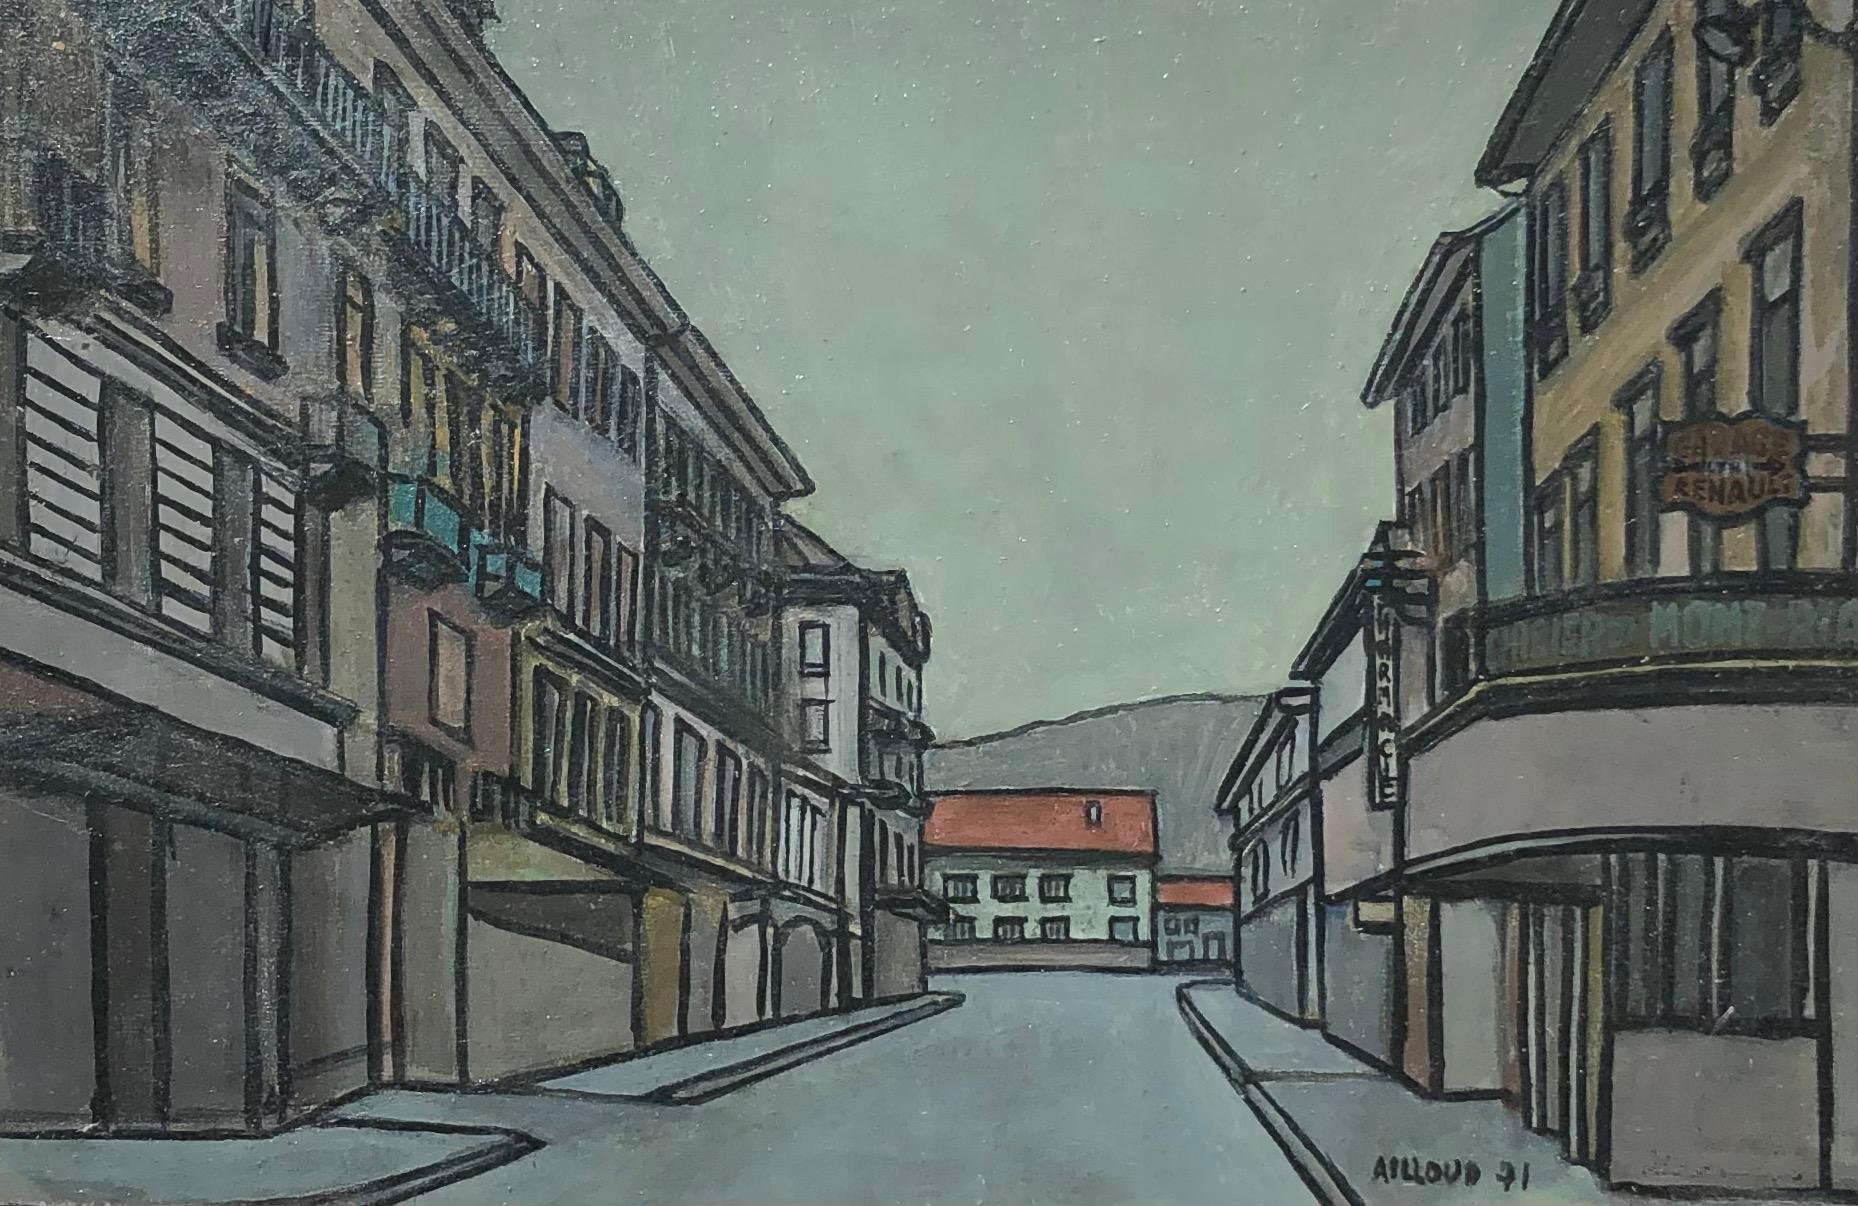 Ailloud Landscape Painting - Village street